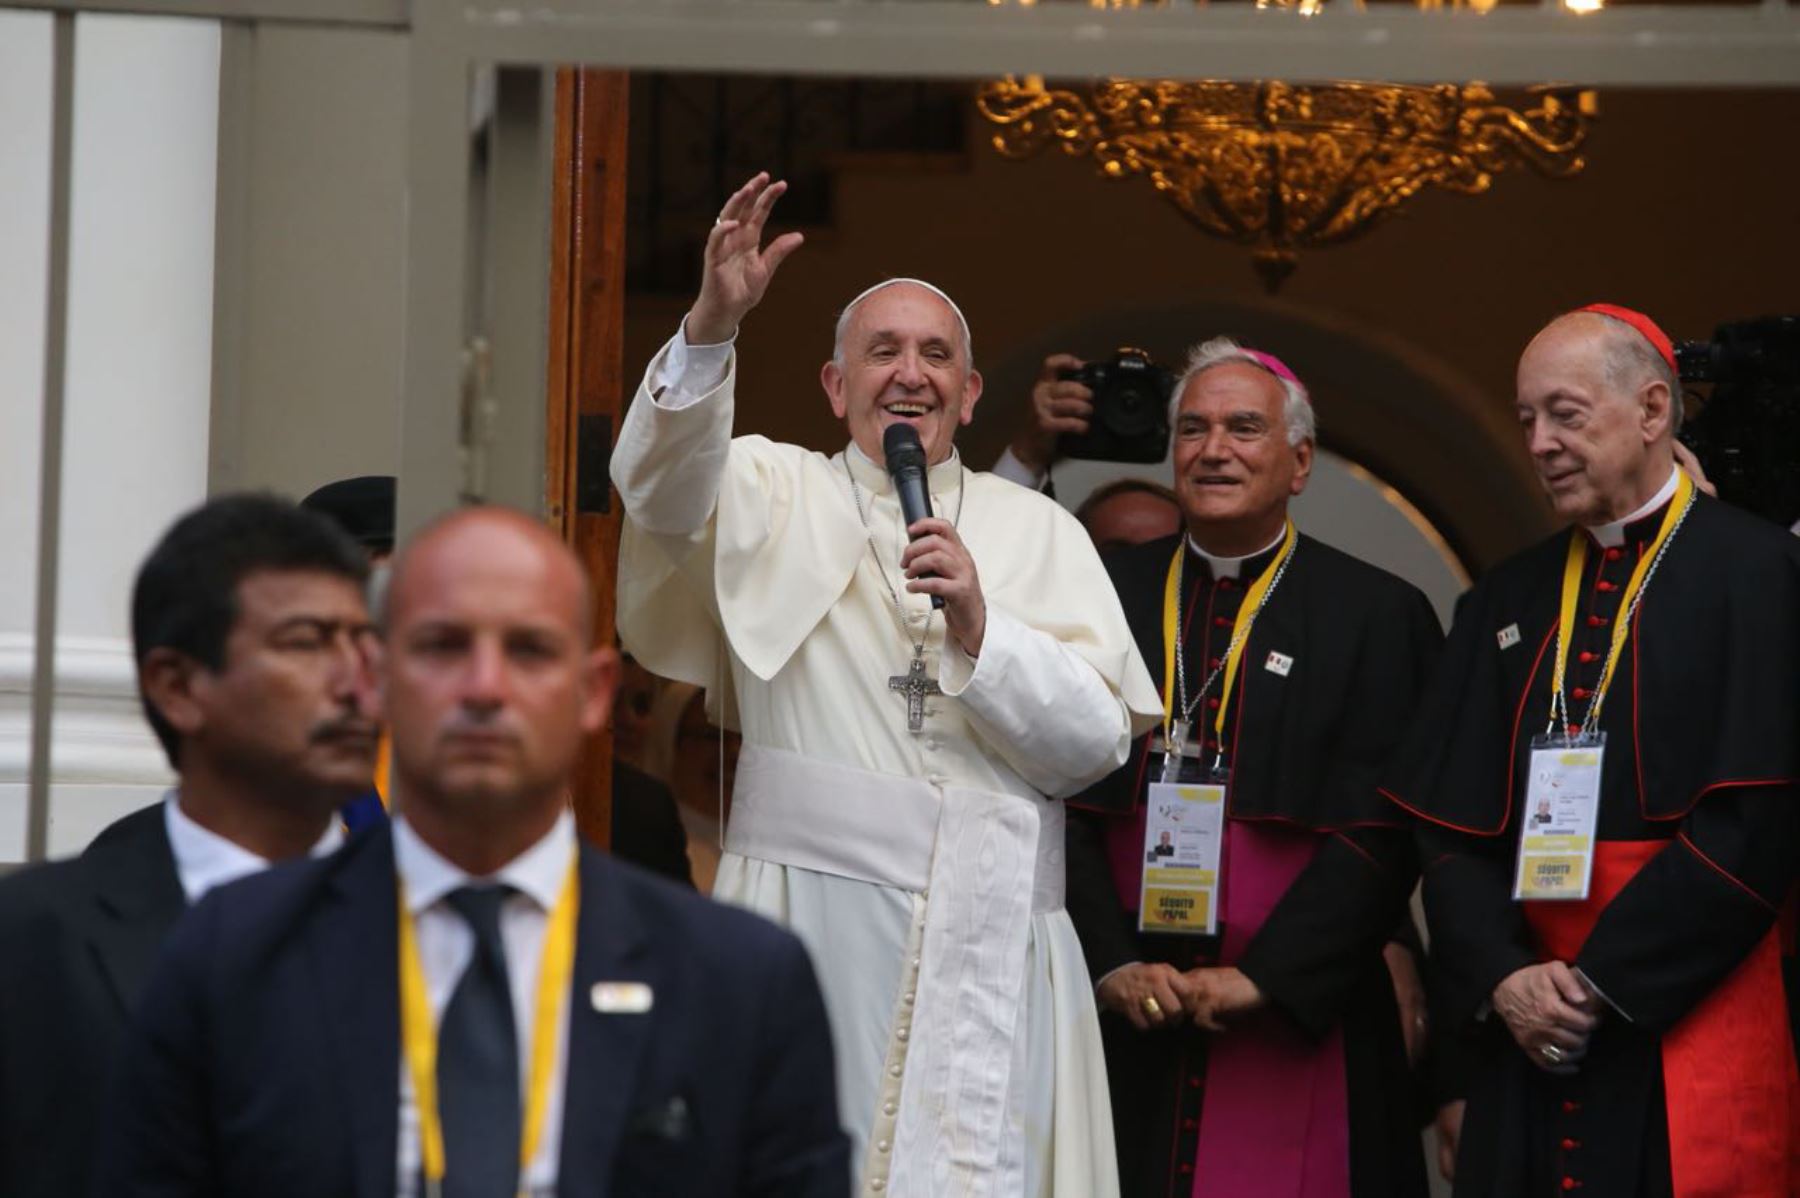 Al llegar a la Nunciatura, el Papa Francisco saludó a los fieles que los esperaban en el lugar. ANDINA/Cesar Garcia